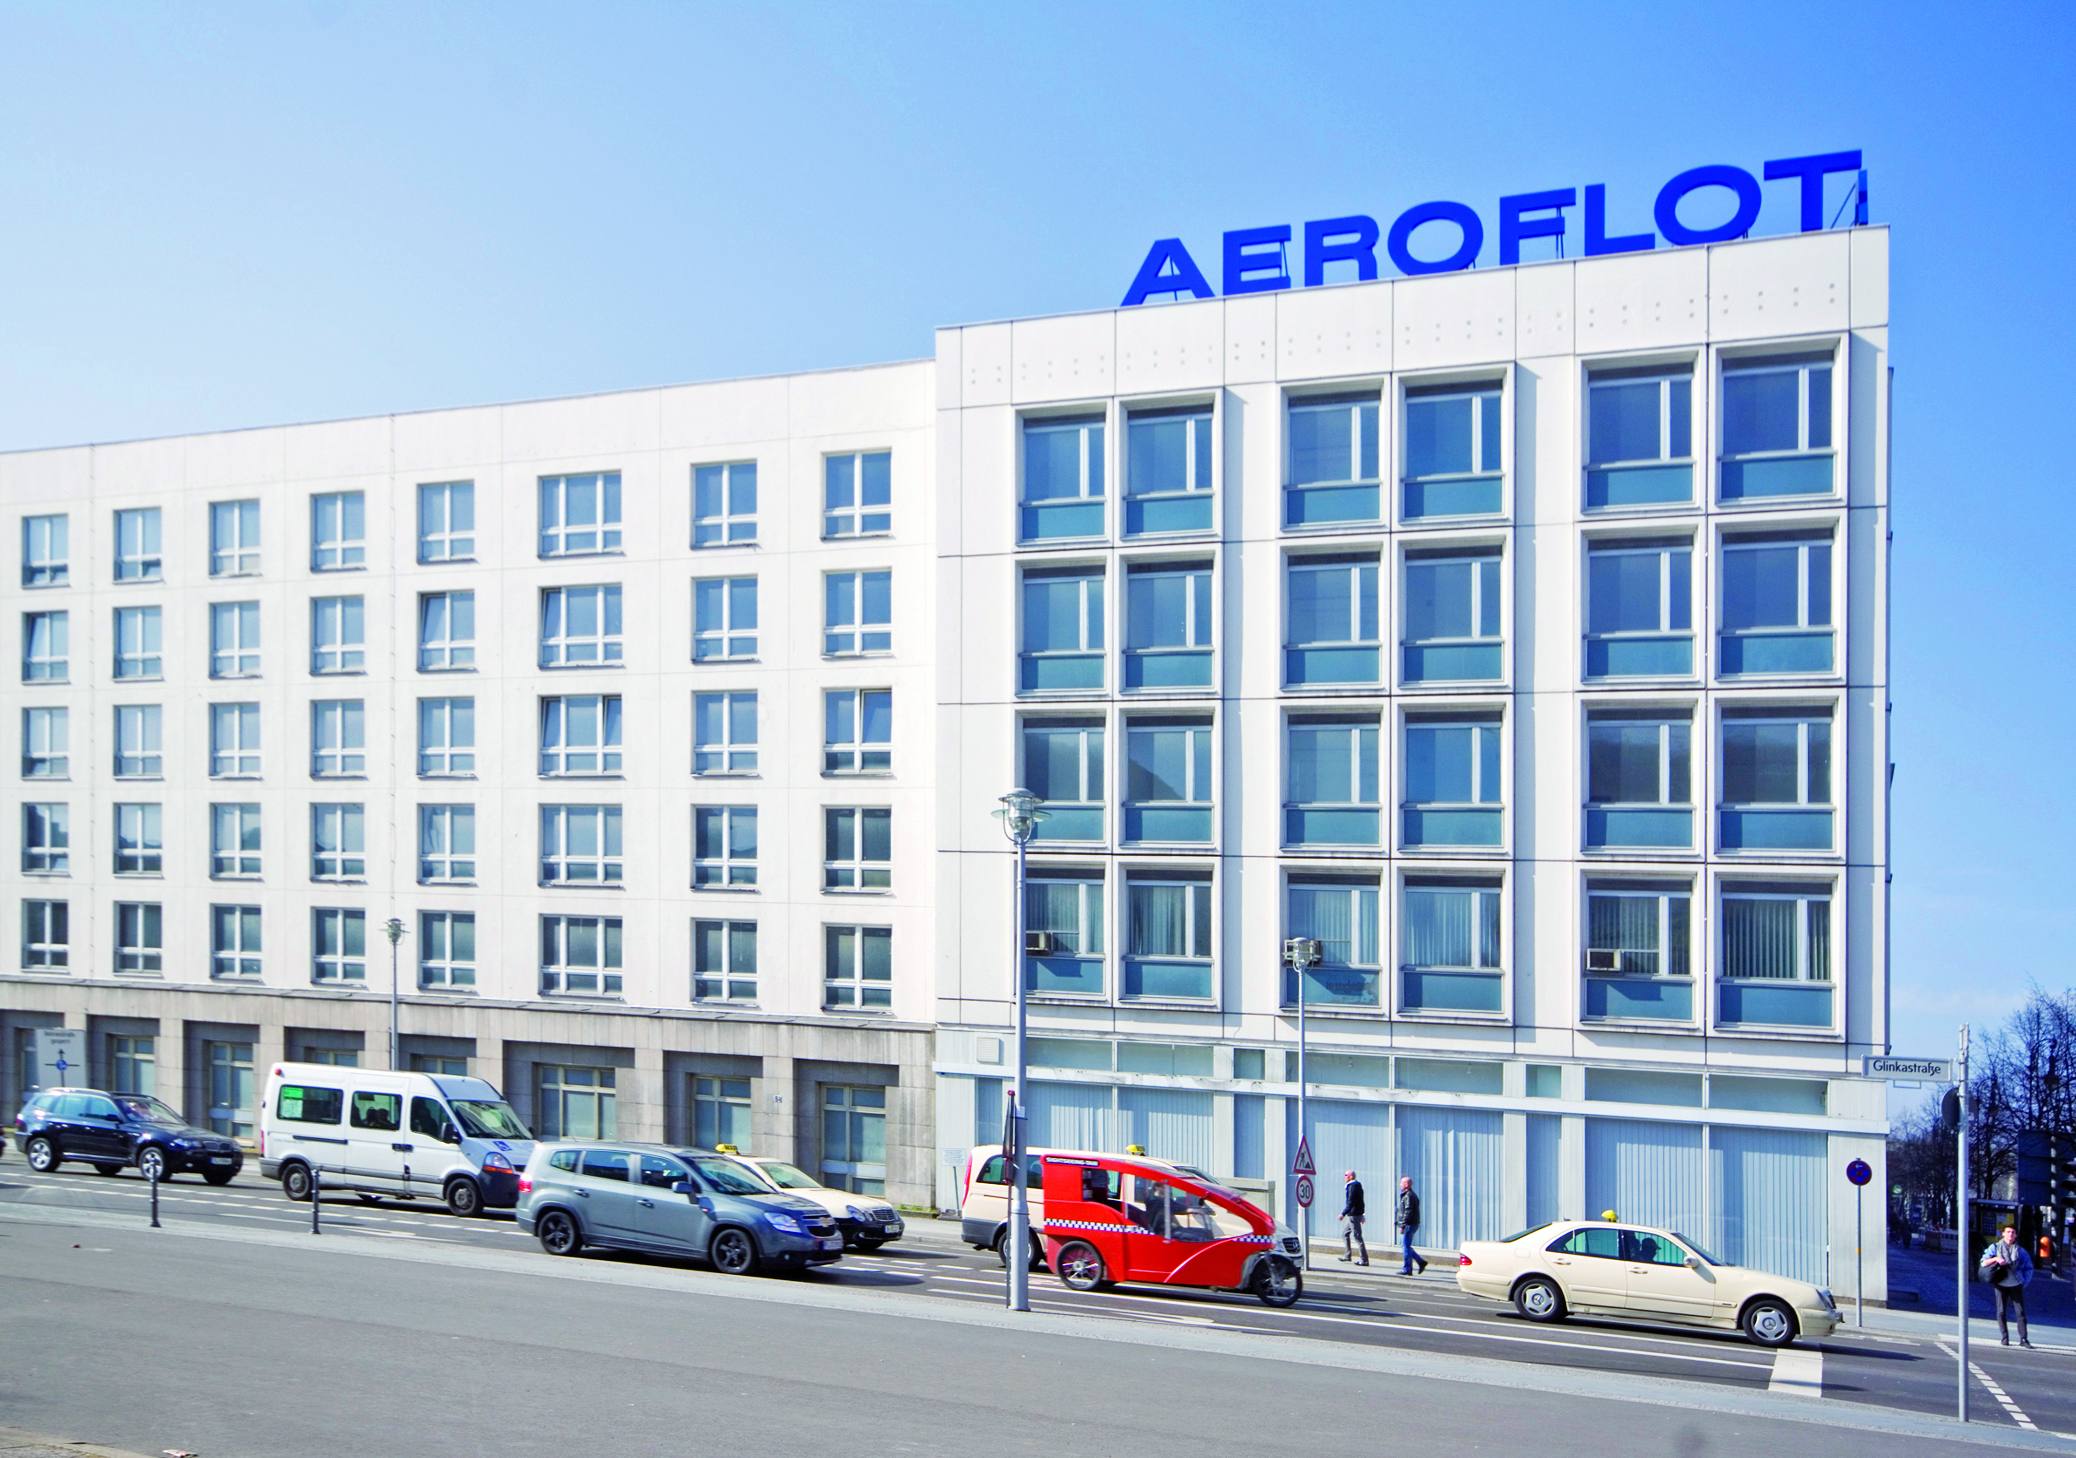 Aeroflot Airlines Office in Dubai, UAE